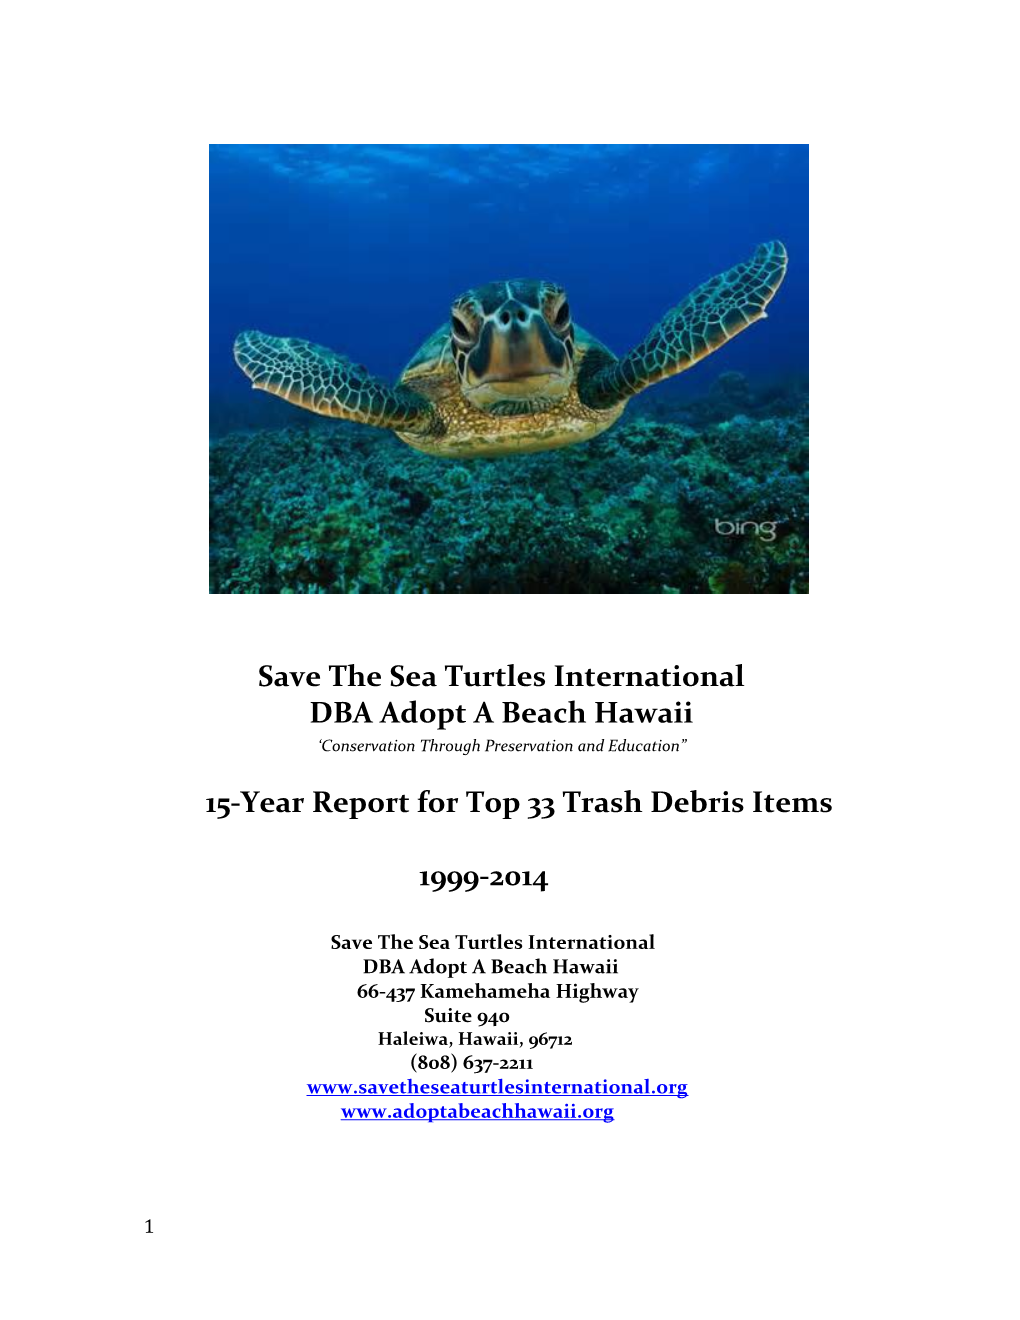 Save the Sea Turtles International